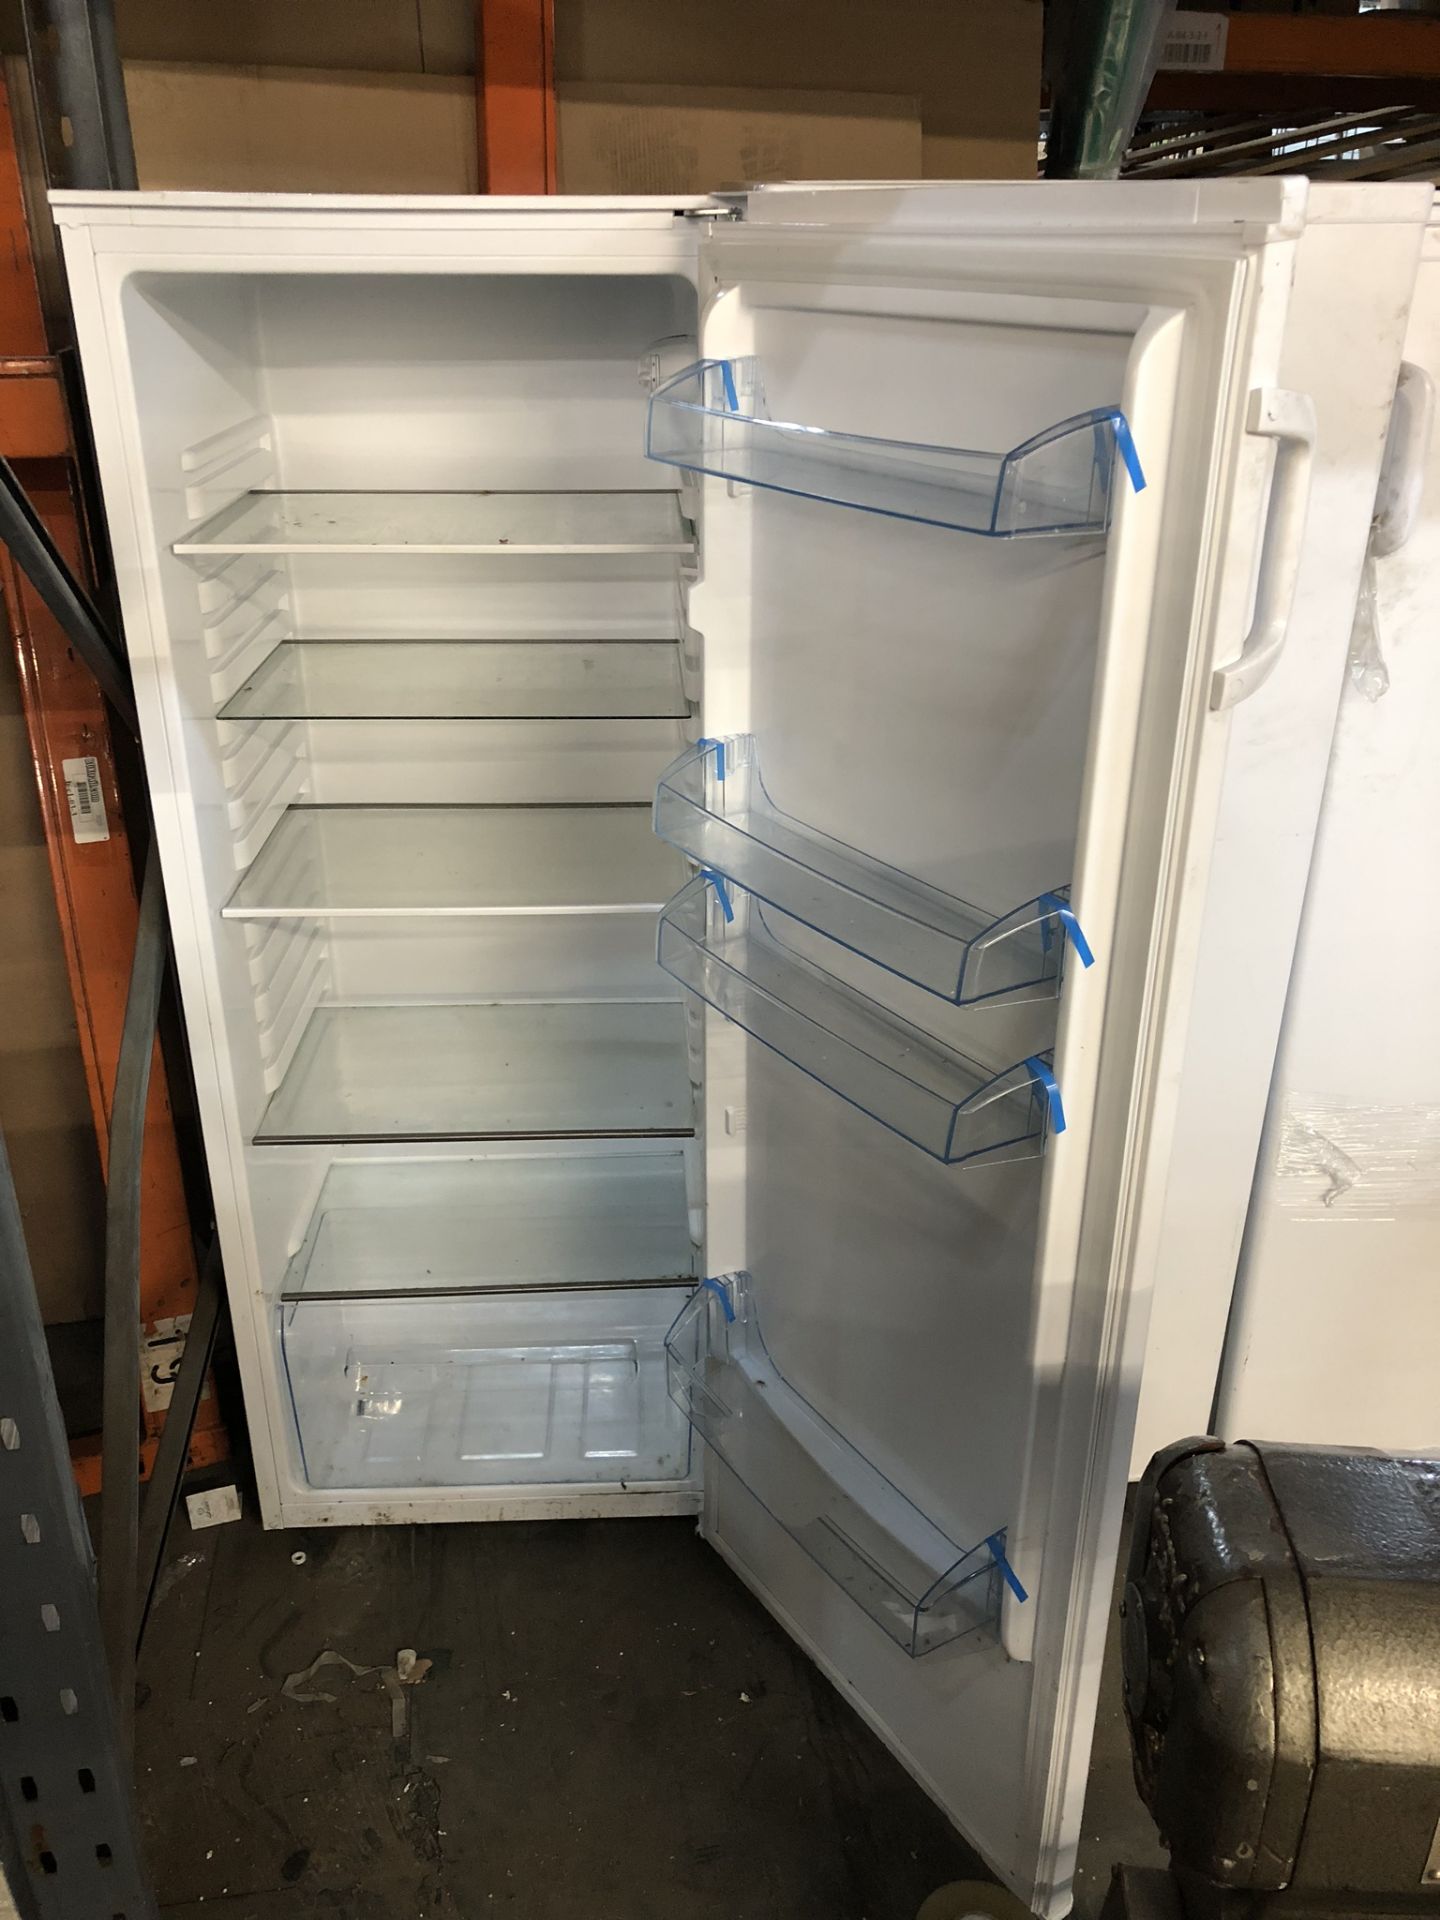 Fridgemaster Upright Refrigerator - Image 2 of 2